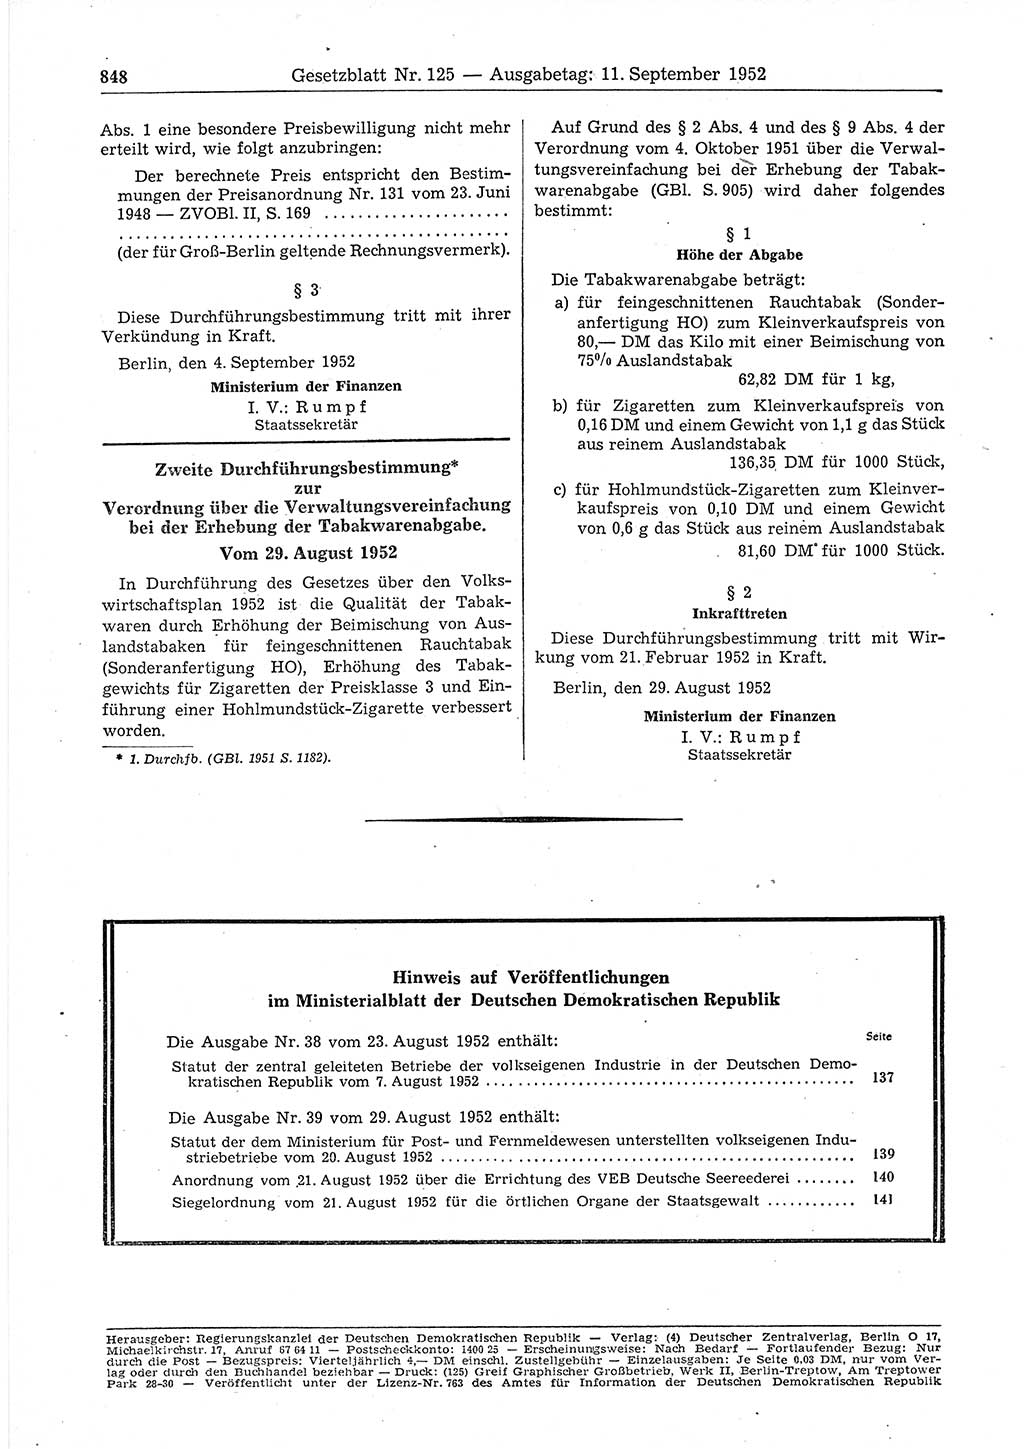 Gesetzblatt (GBl.) der Deutschen Demokratischen Republik (DDR) 1952, Seite 848 (GBl. DDR 1952, S. 848)